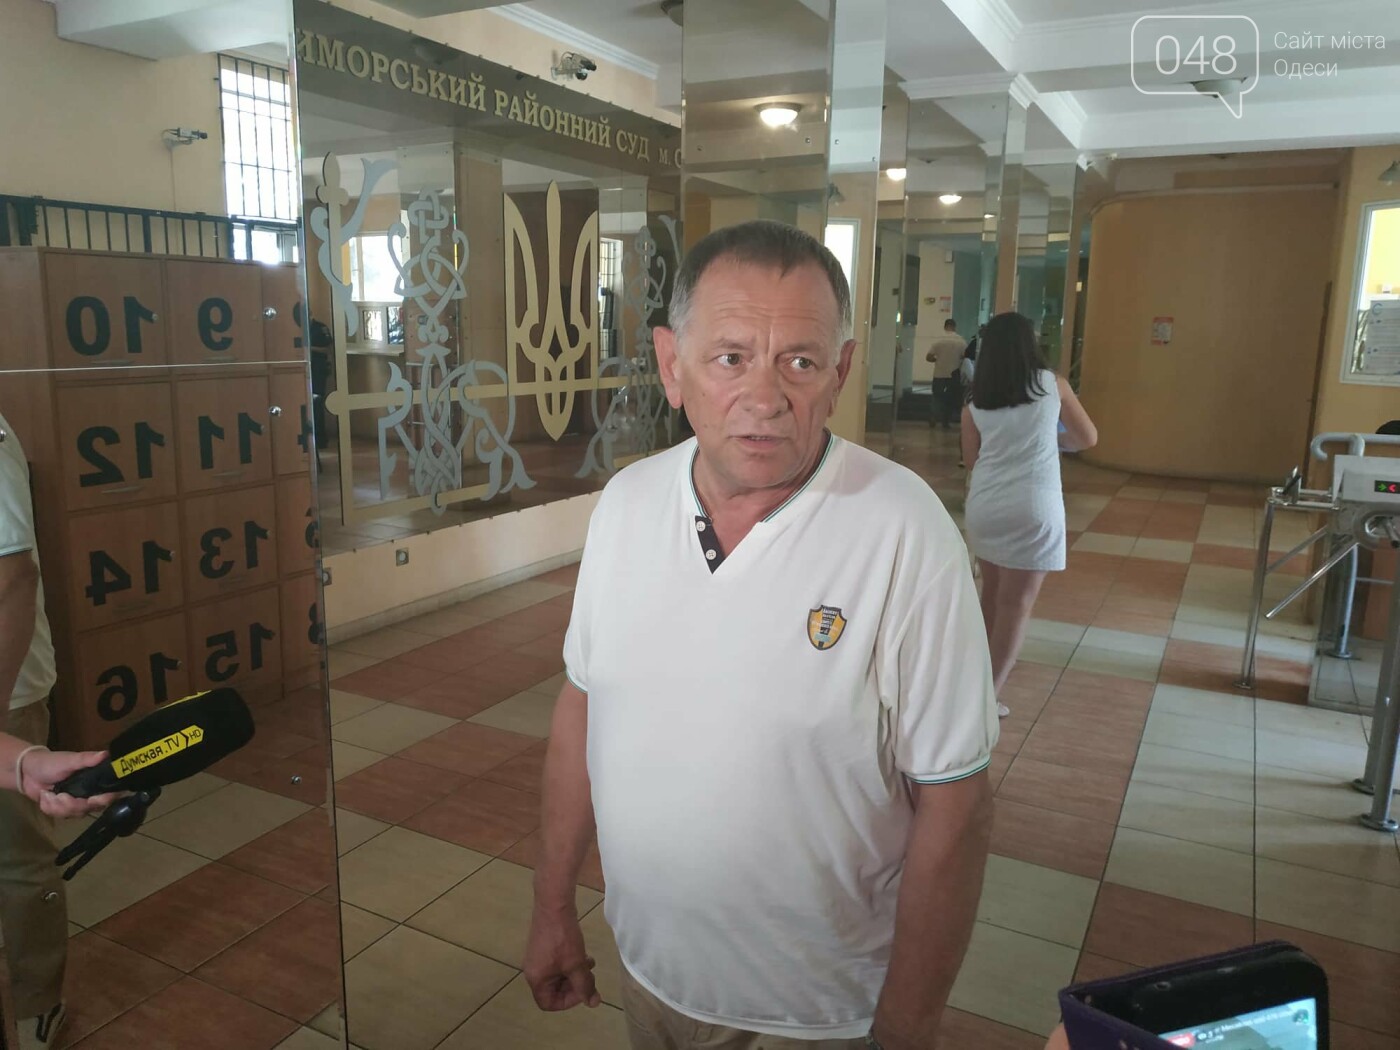 Фигурант по делу Гандзюк не явился на заседание суда в Одессе